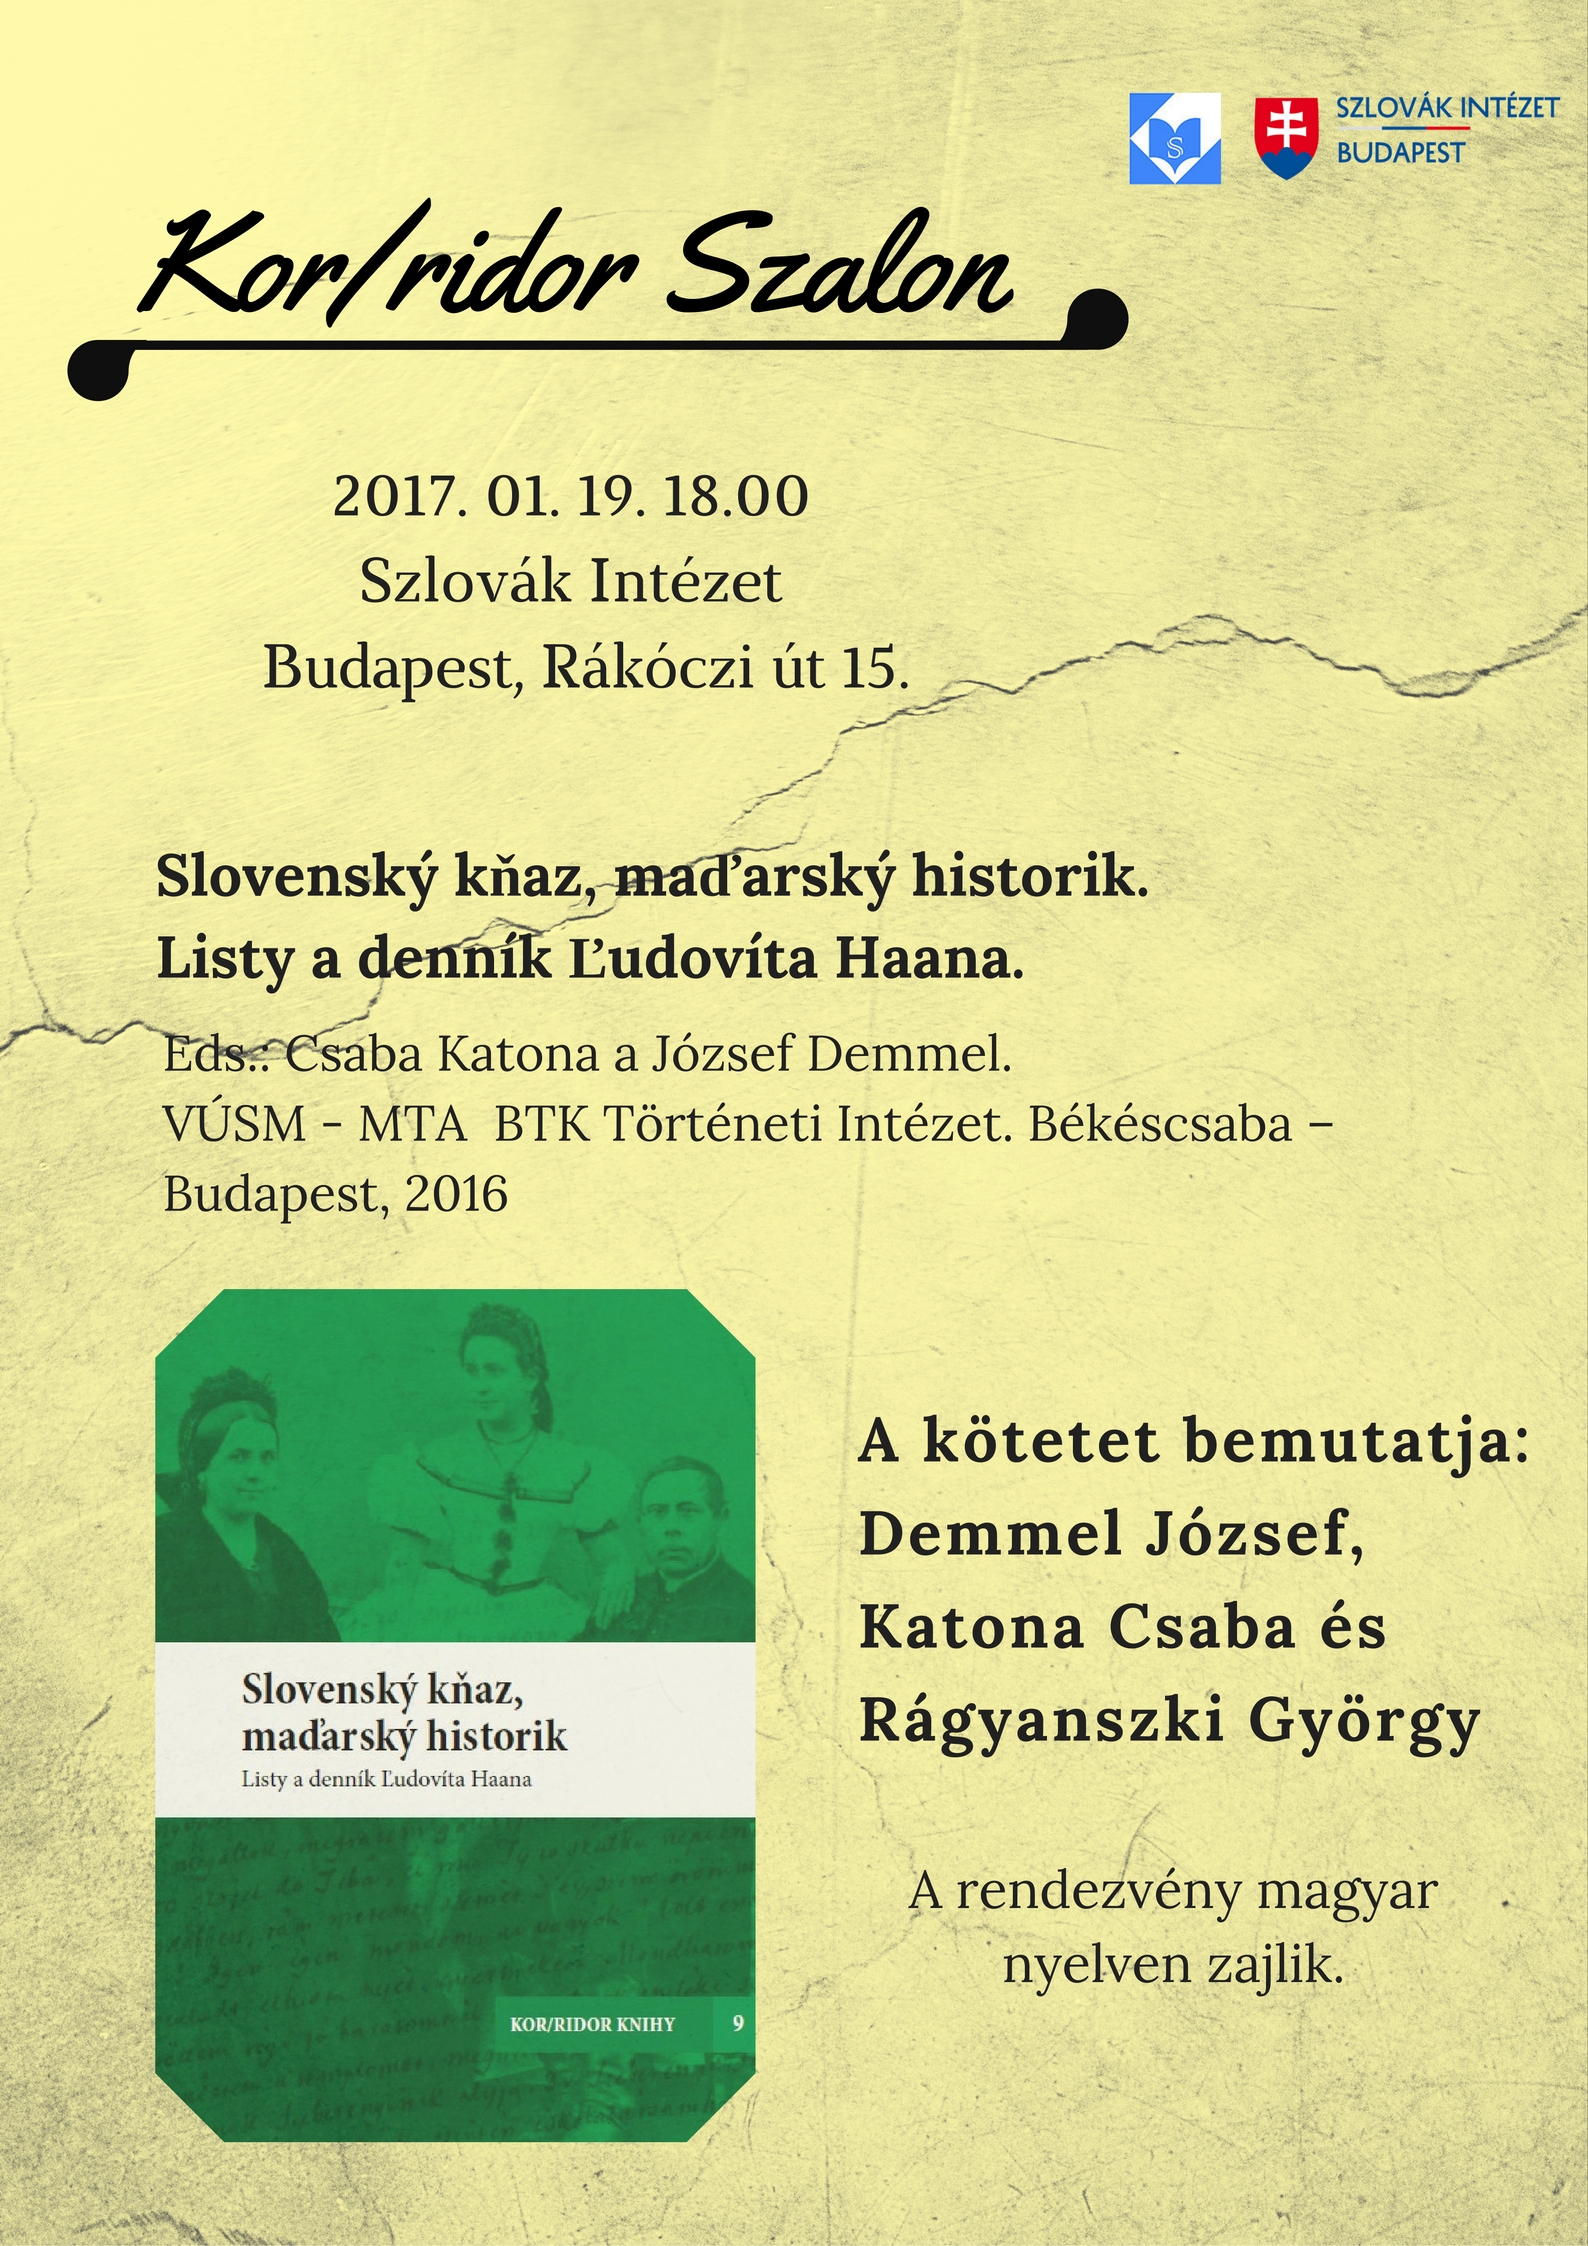 A Kor/ridor Könyvek (Kor/ridor Knihy) 9. kötetének bemutatója a Szlovák Intézetben